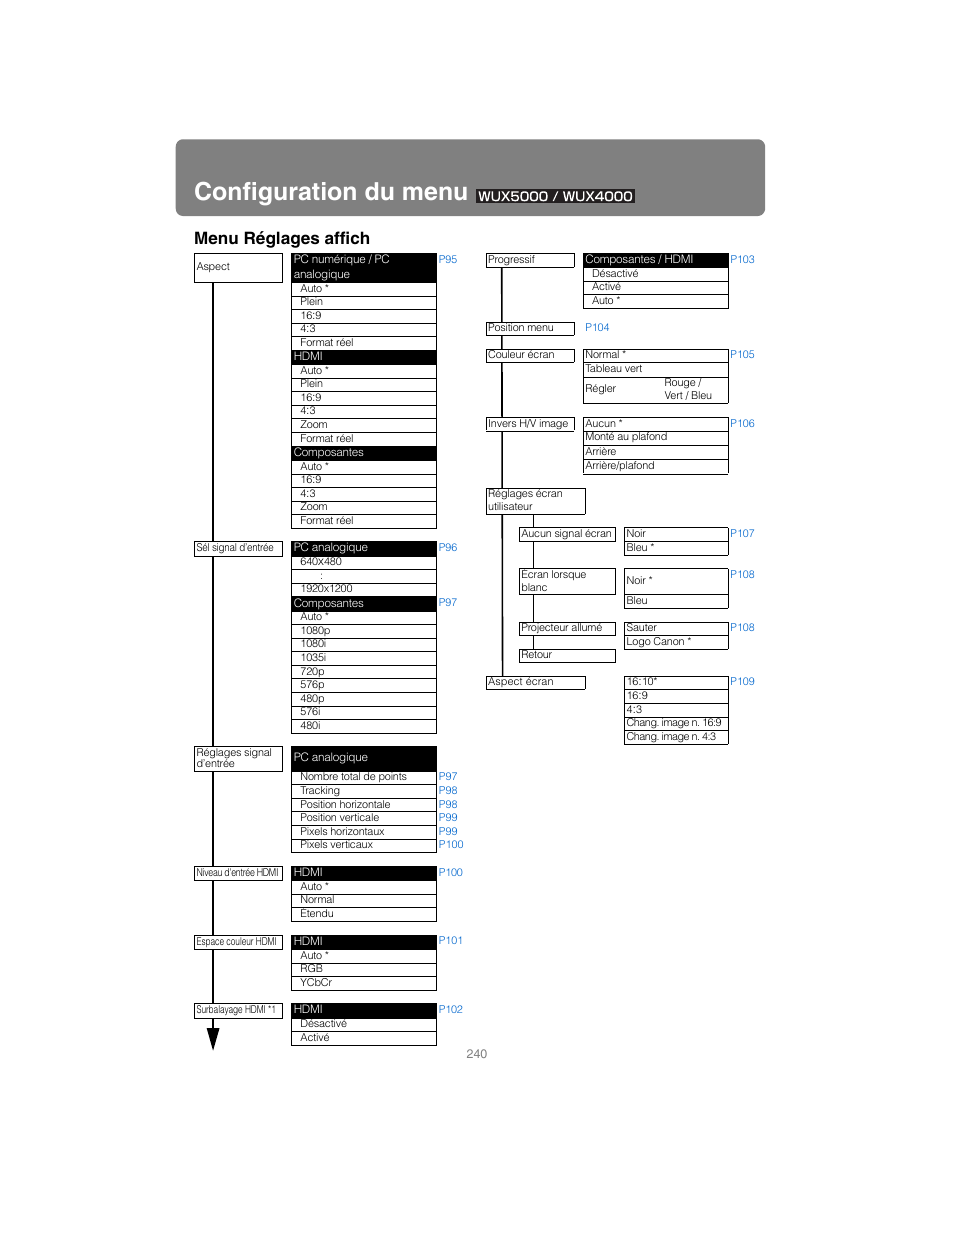 Configuration du menu, Z-vous aux, Menu réglages affich | Canon XEED WUX4000 Manuel d'utilisation | Page 240 / 248